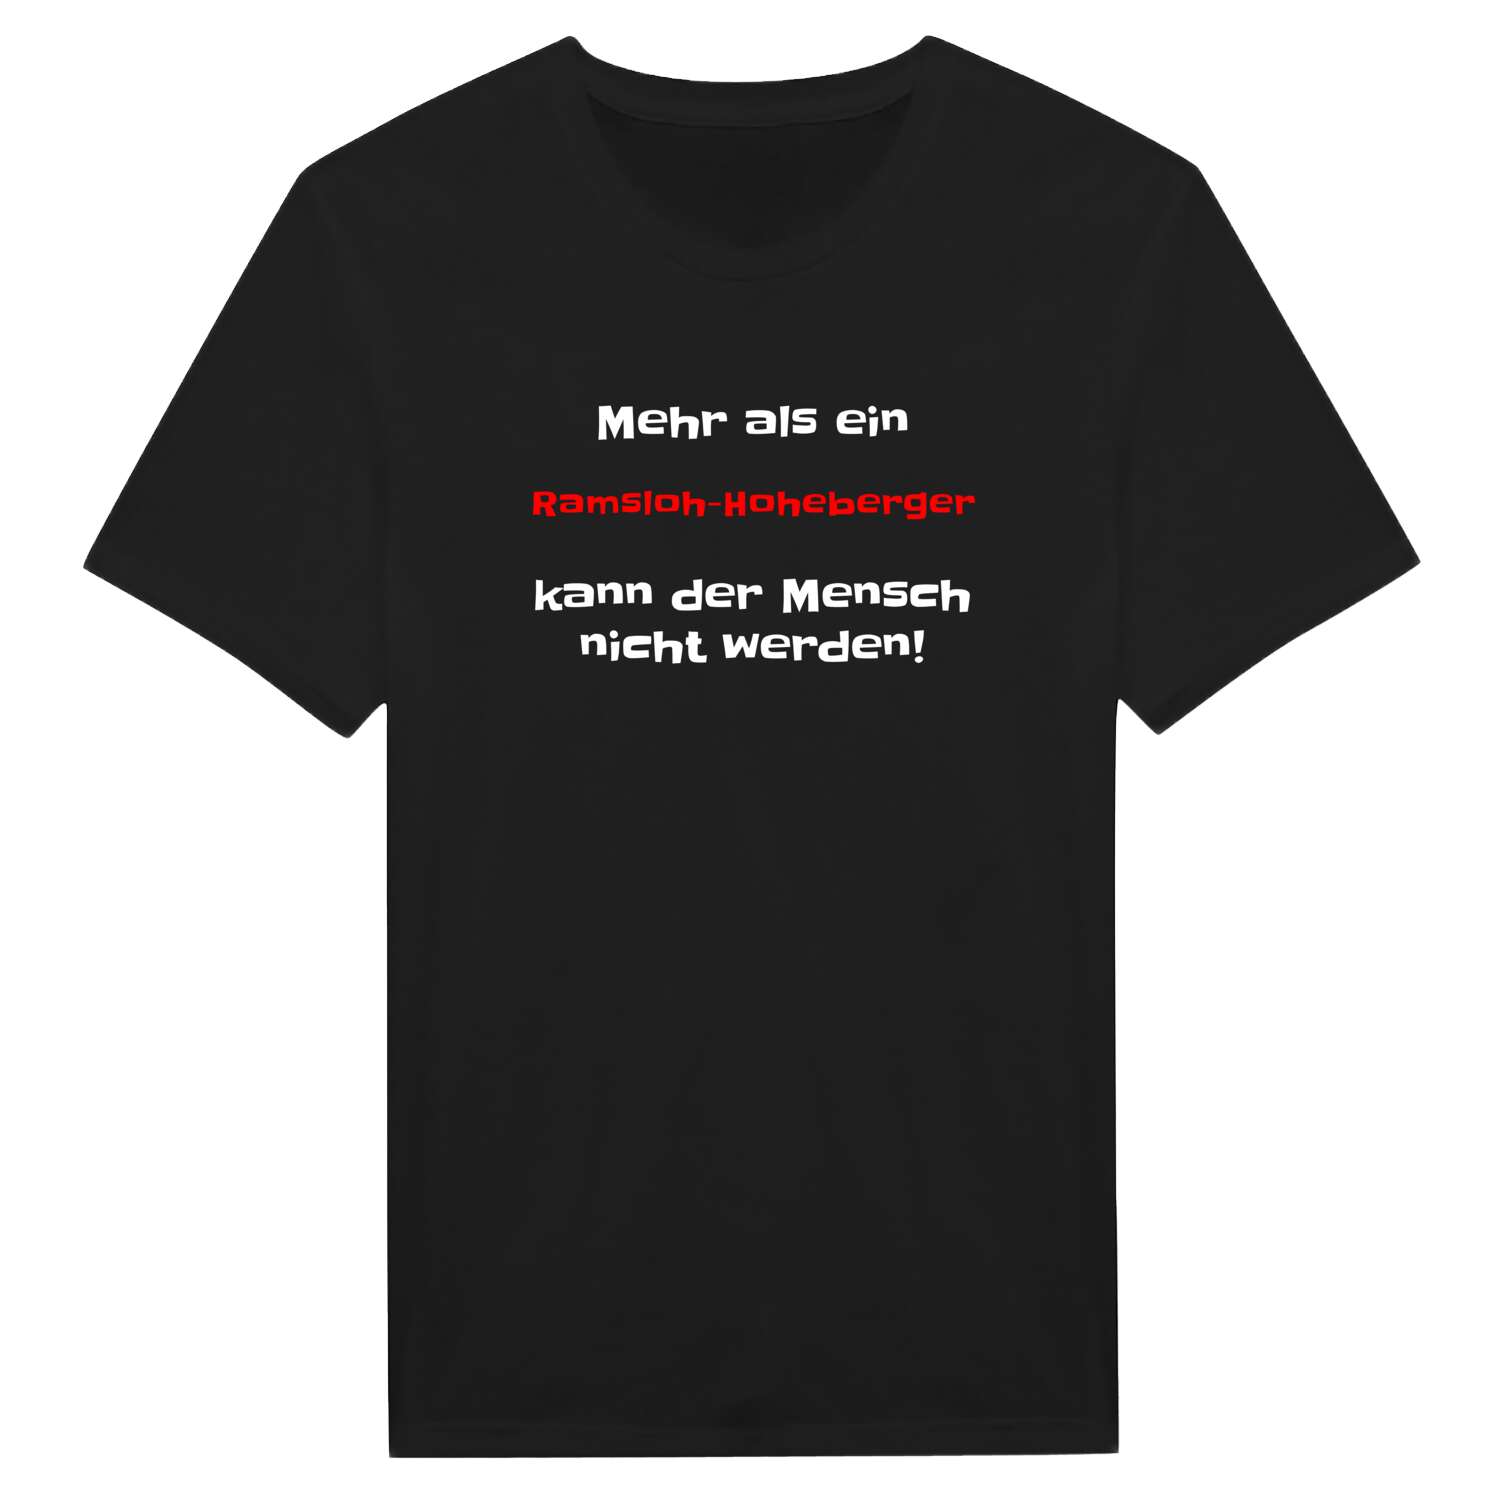 Ramsloh-Hoheberg T-Shirt »Mehr als ein«